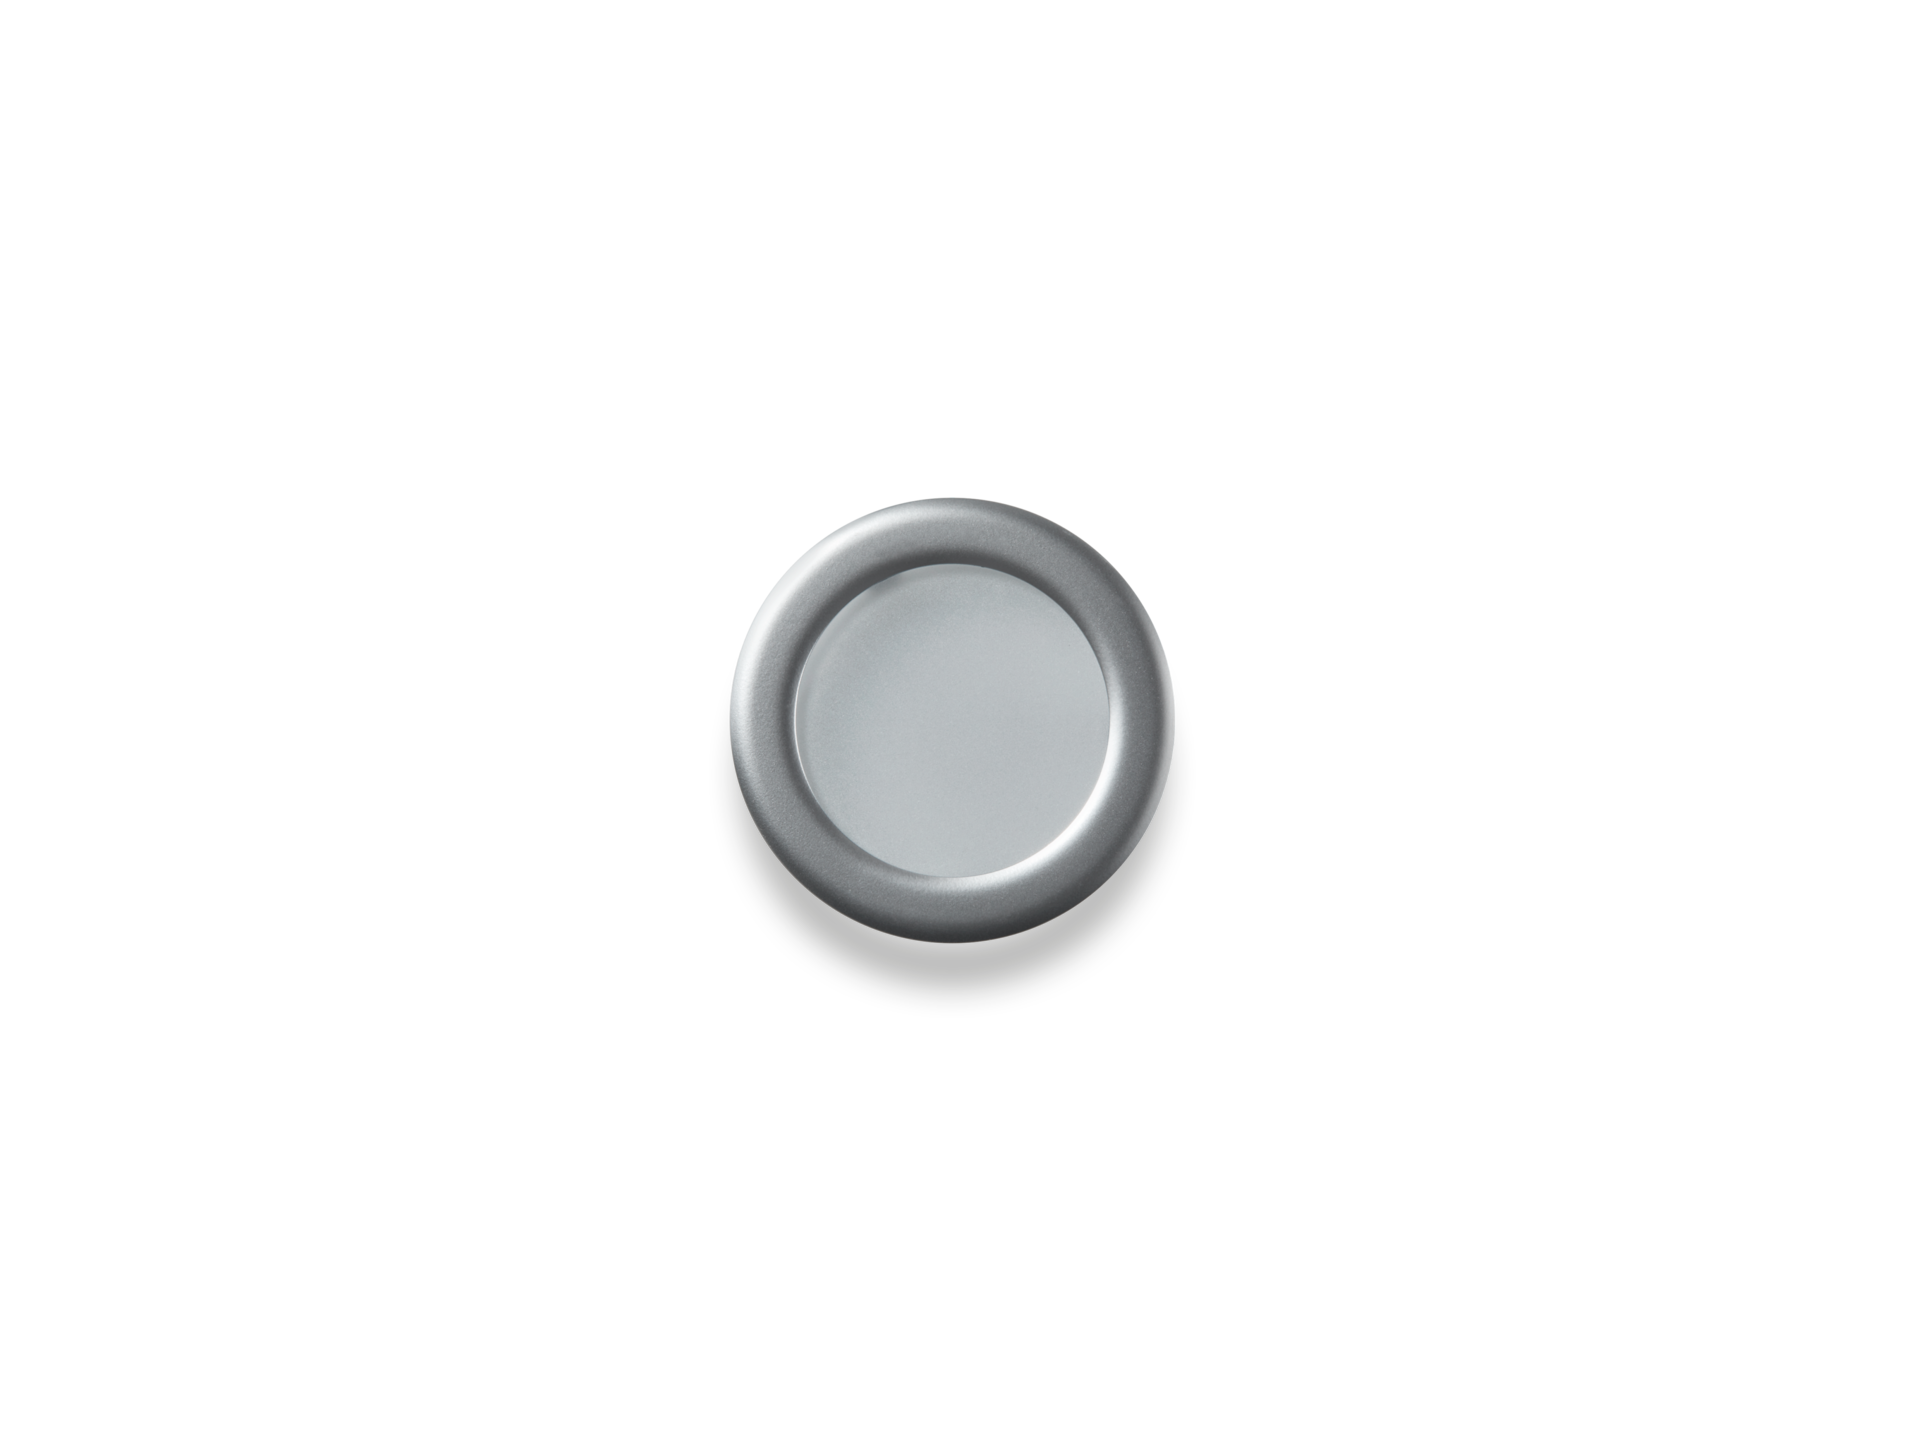 Ricambi domestico - anello decorativo lampada alogena - 1